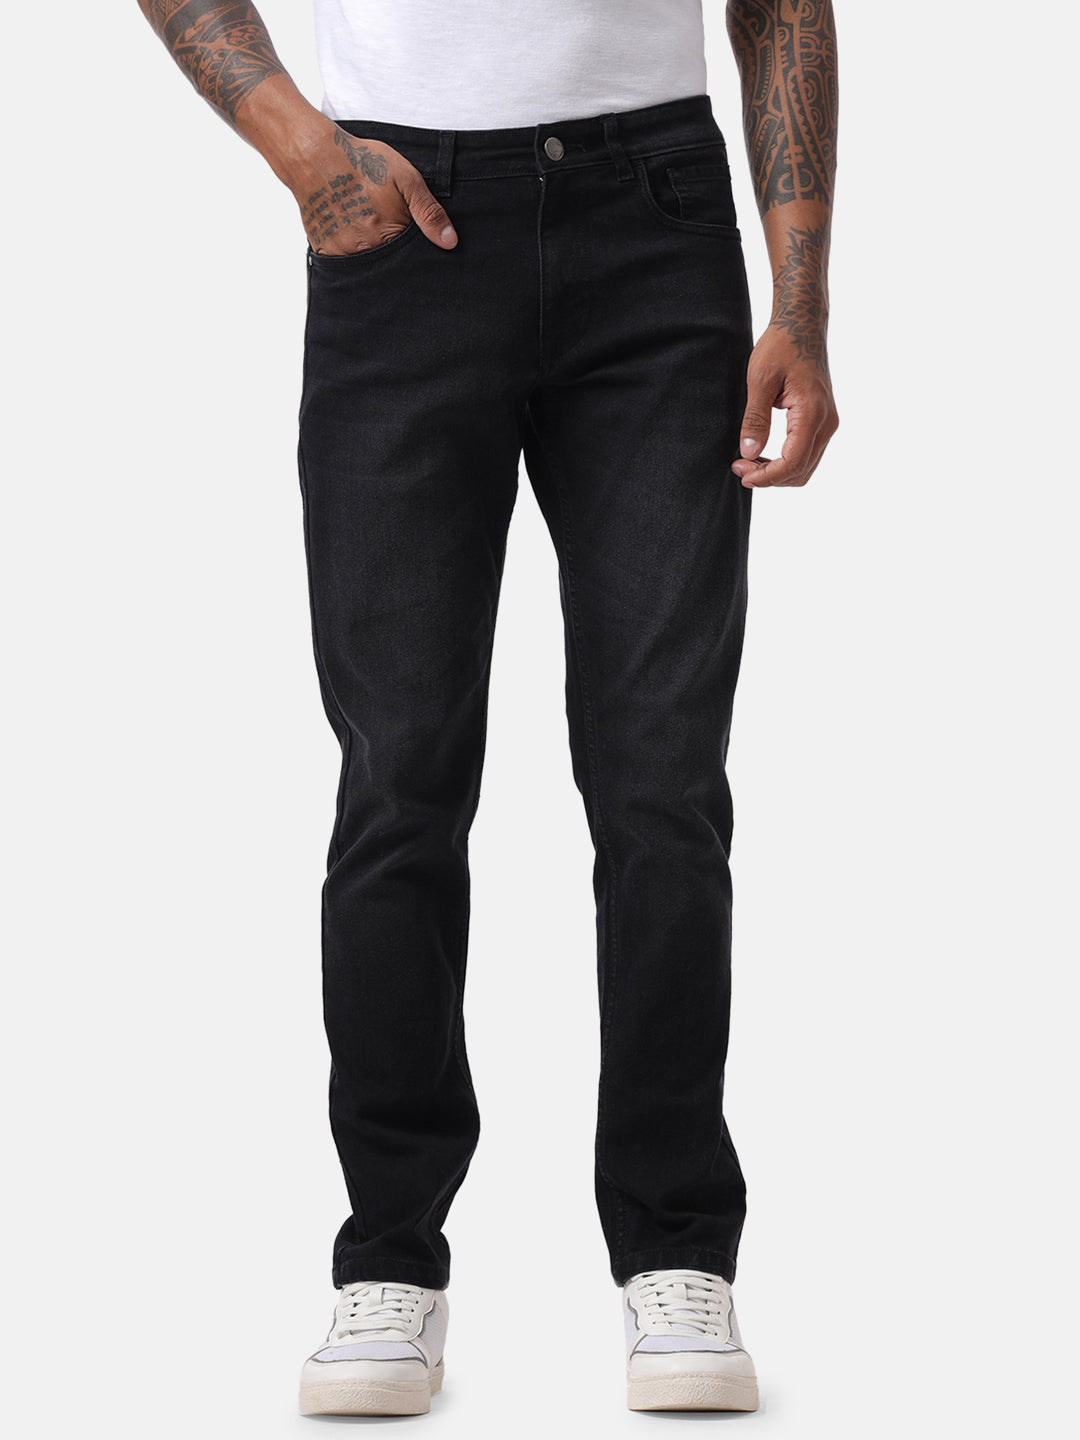 Basic Black Five Pocket Jeans